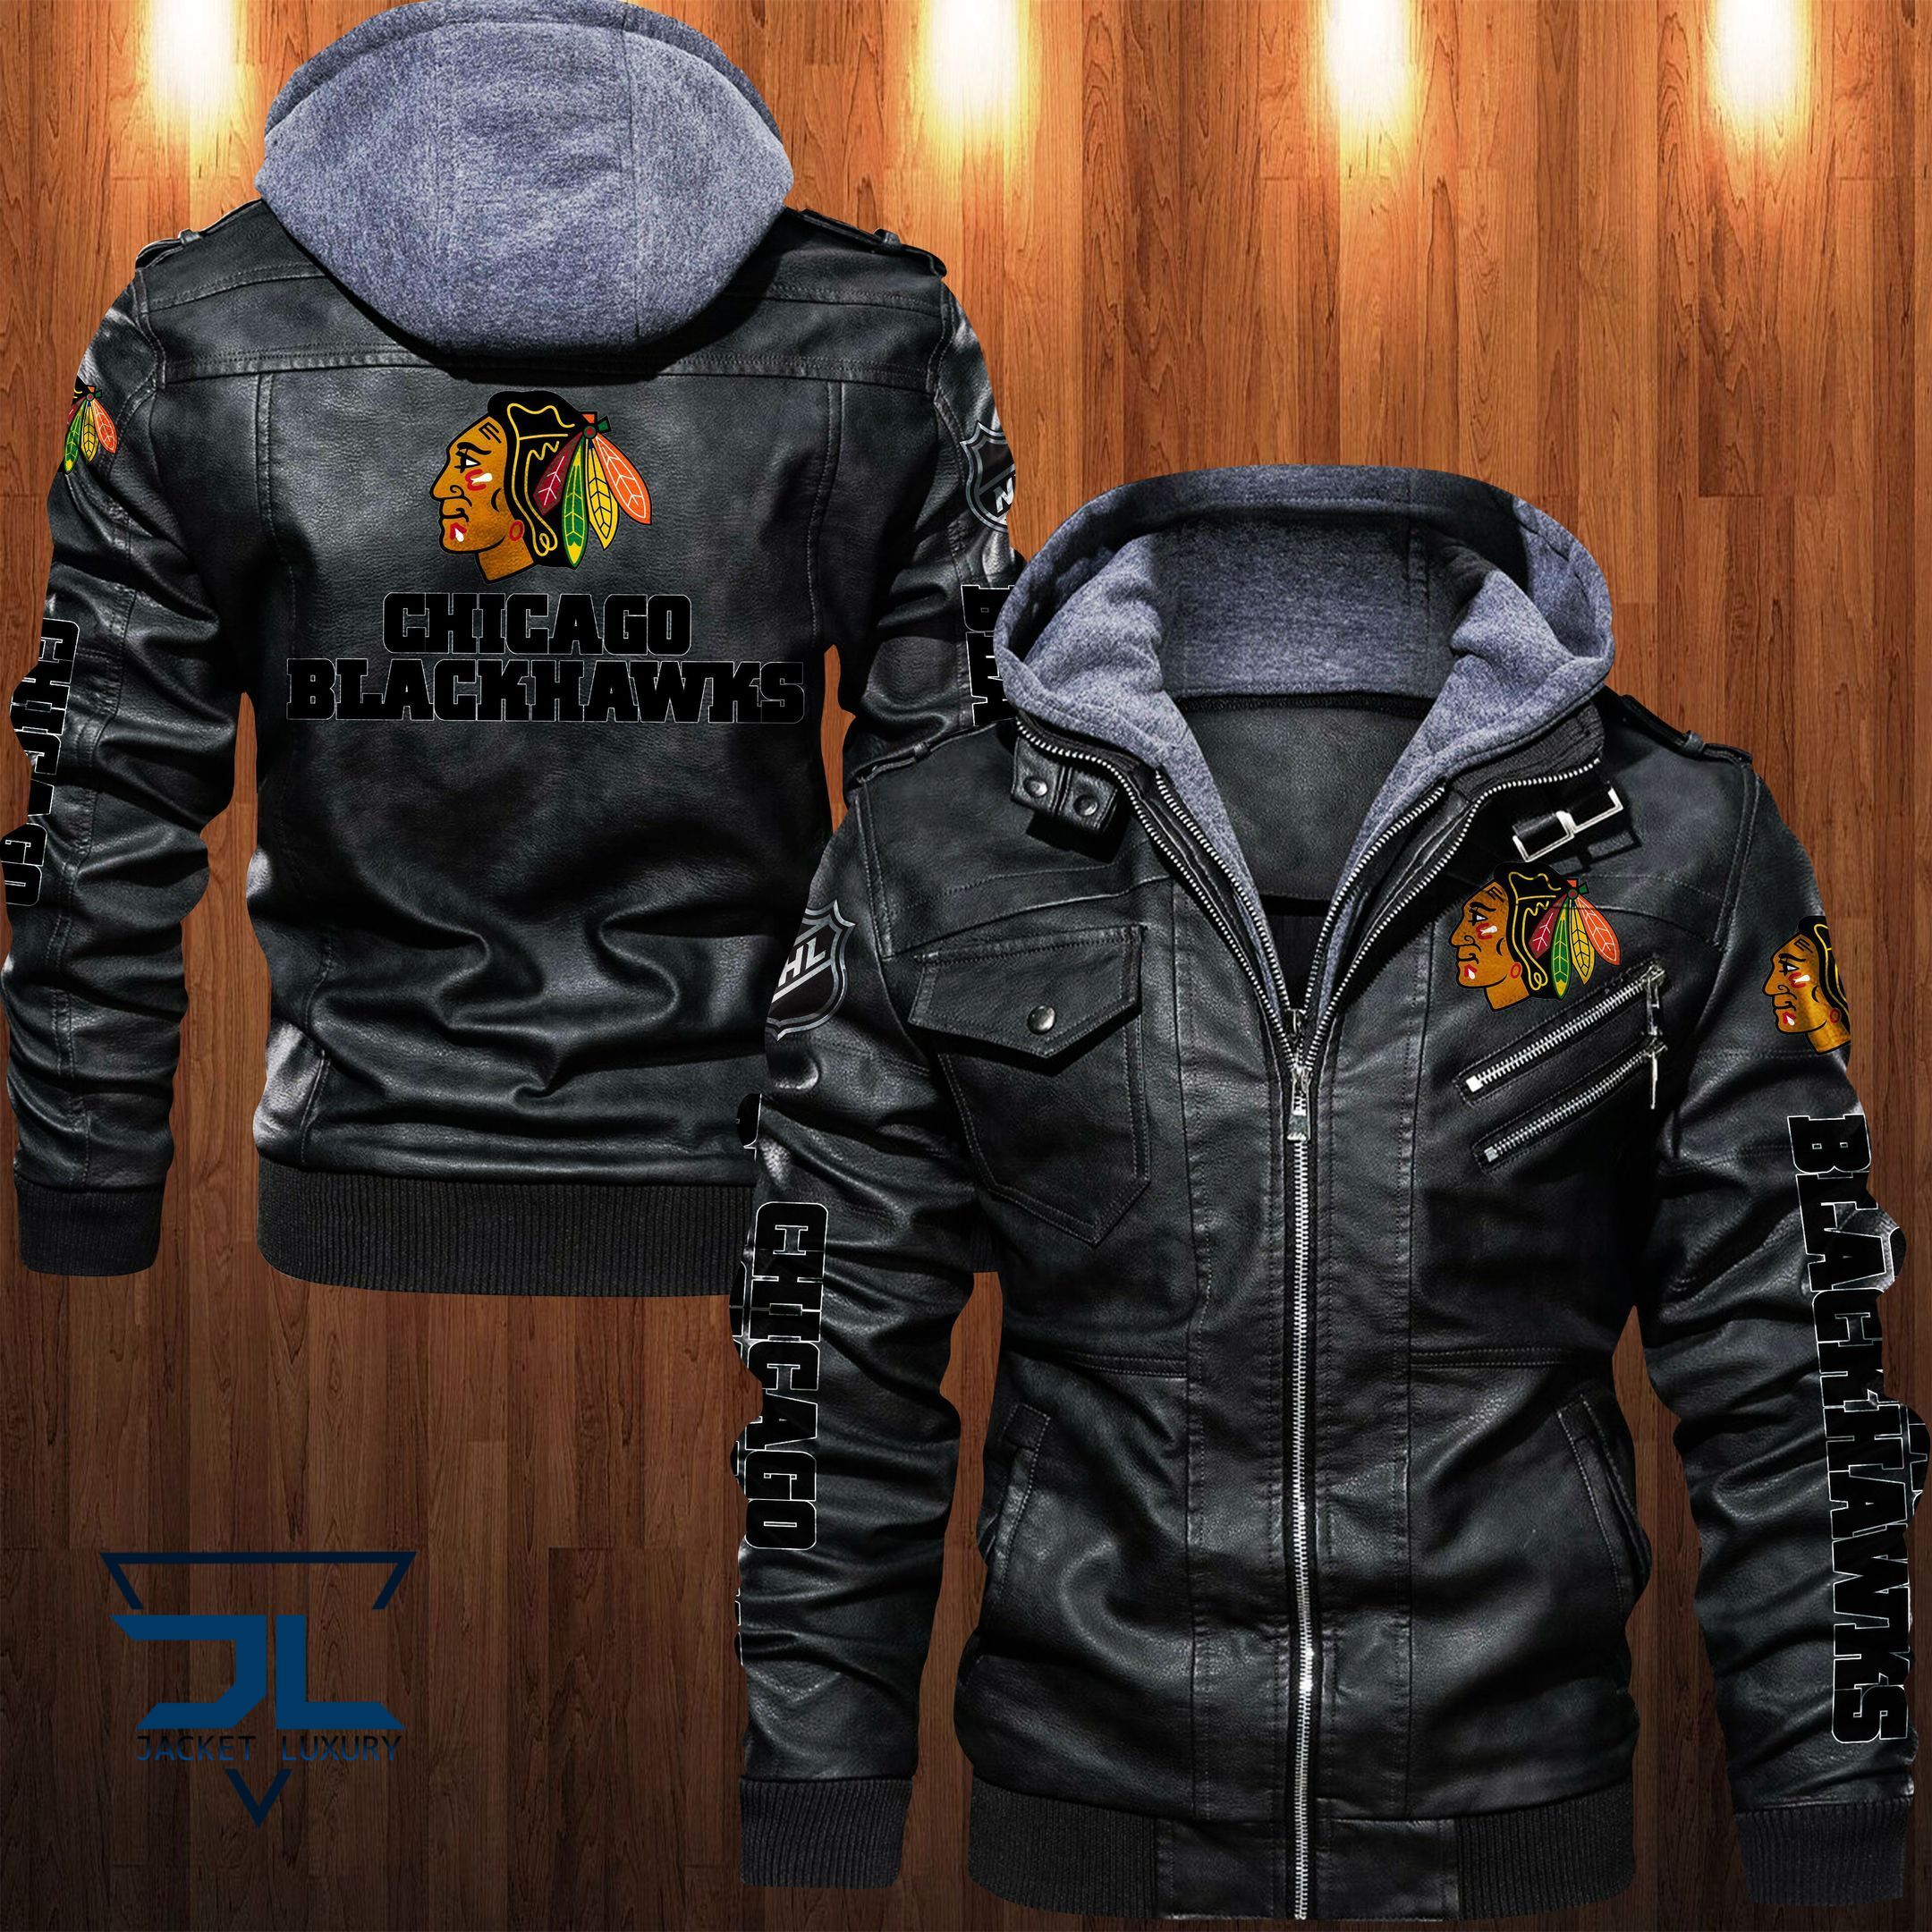 Get the best jackets under $100! 345